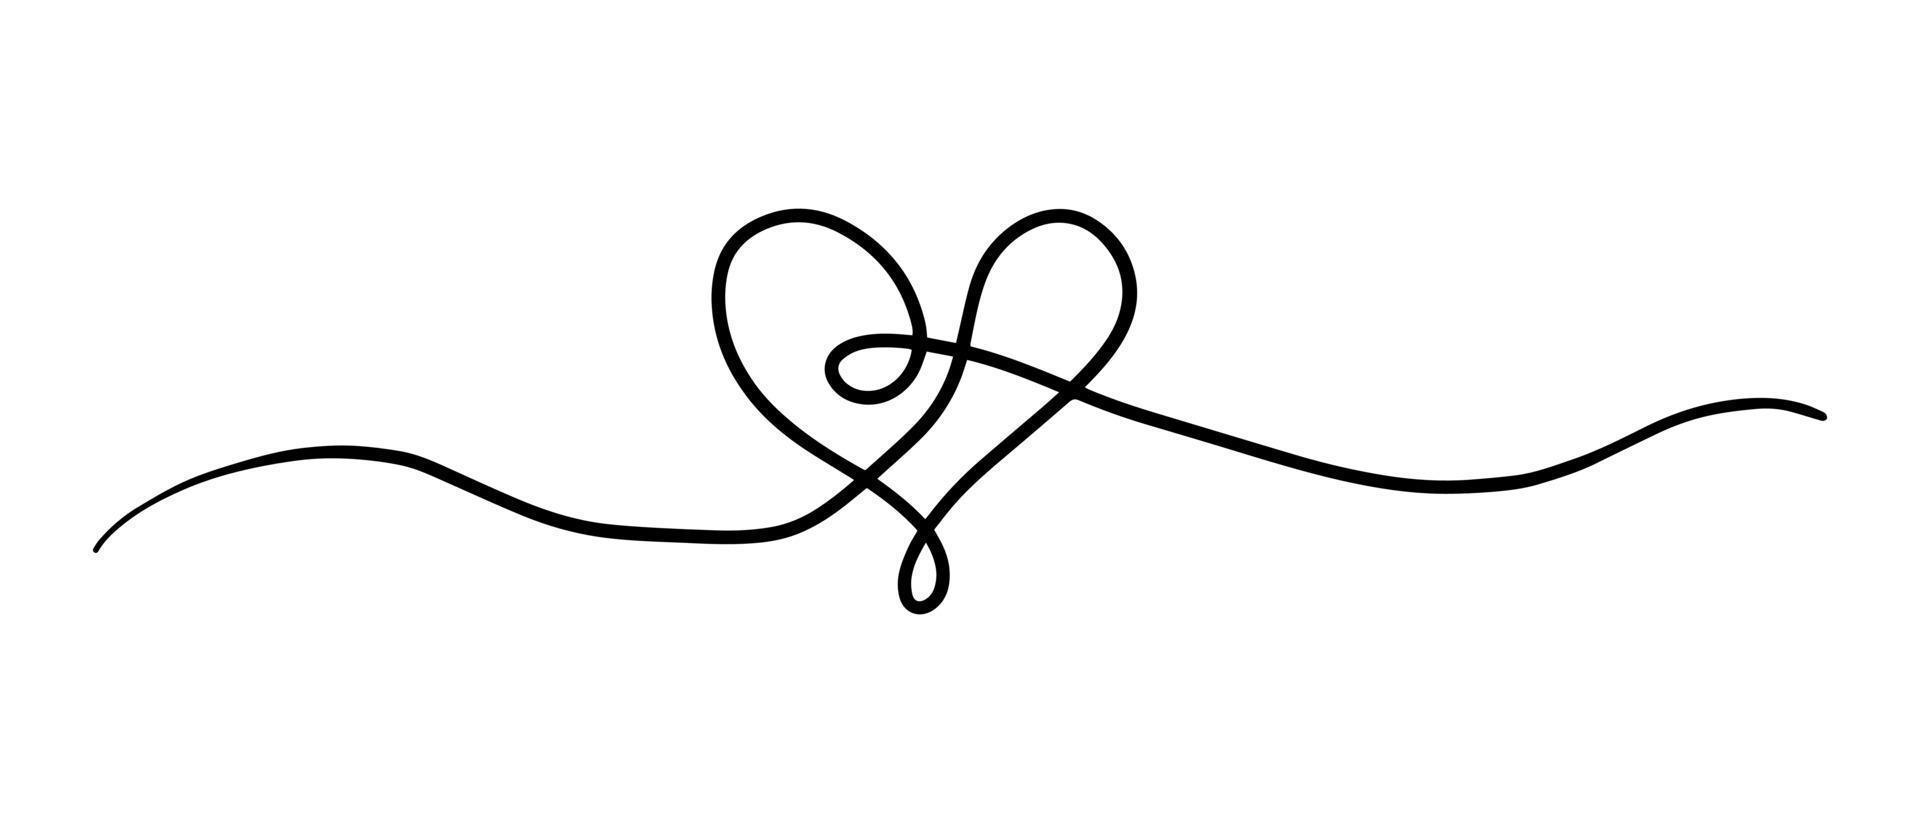 rader den där form en symbol av kärlek. vektor illustration